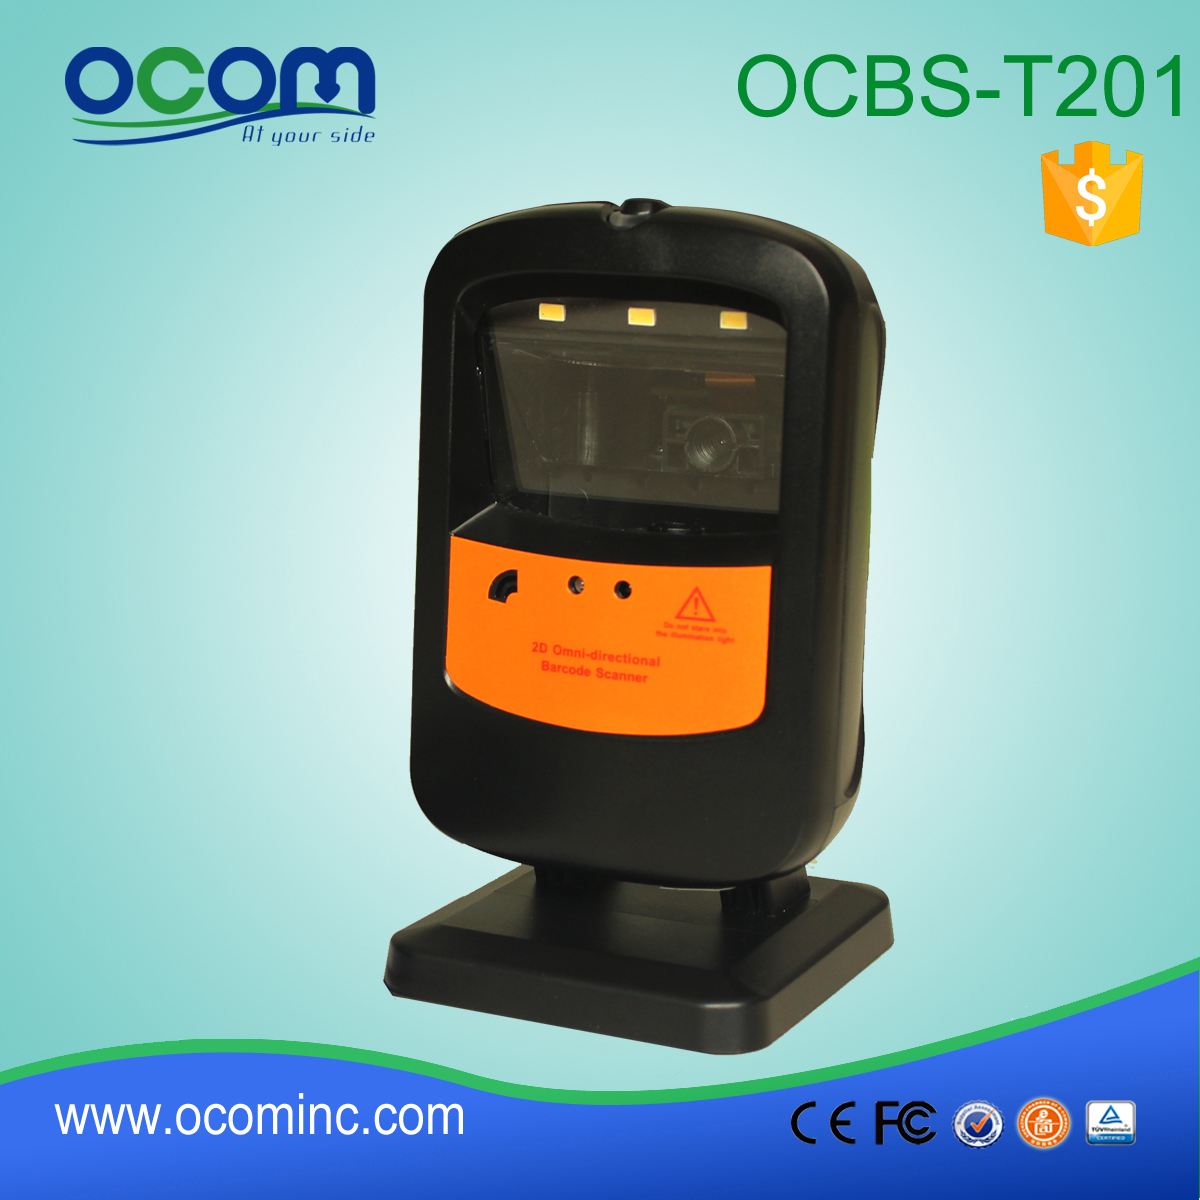 全方位二维桌面式条码扫描器 OCBS-T201